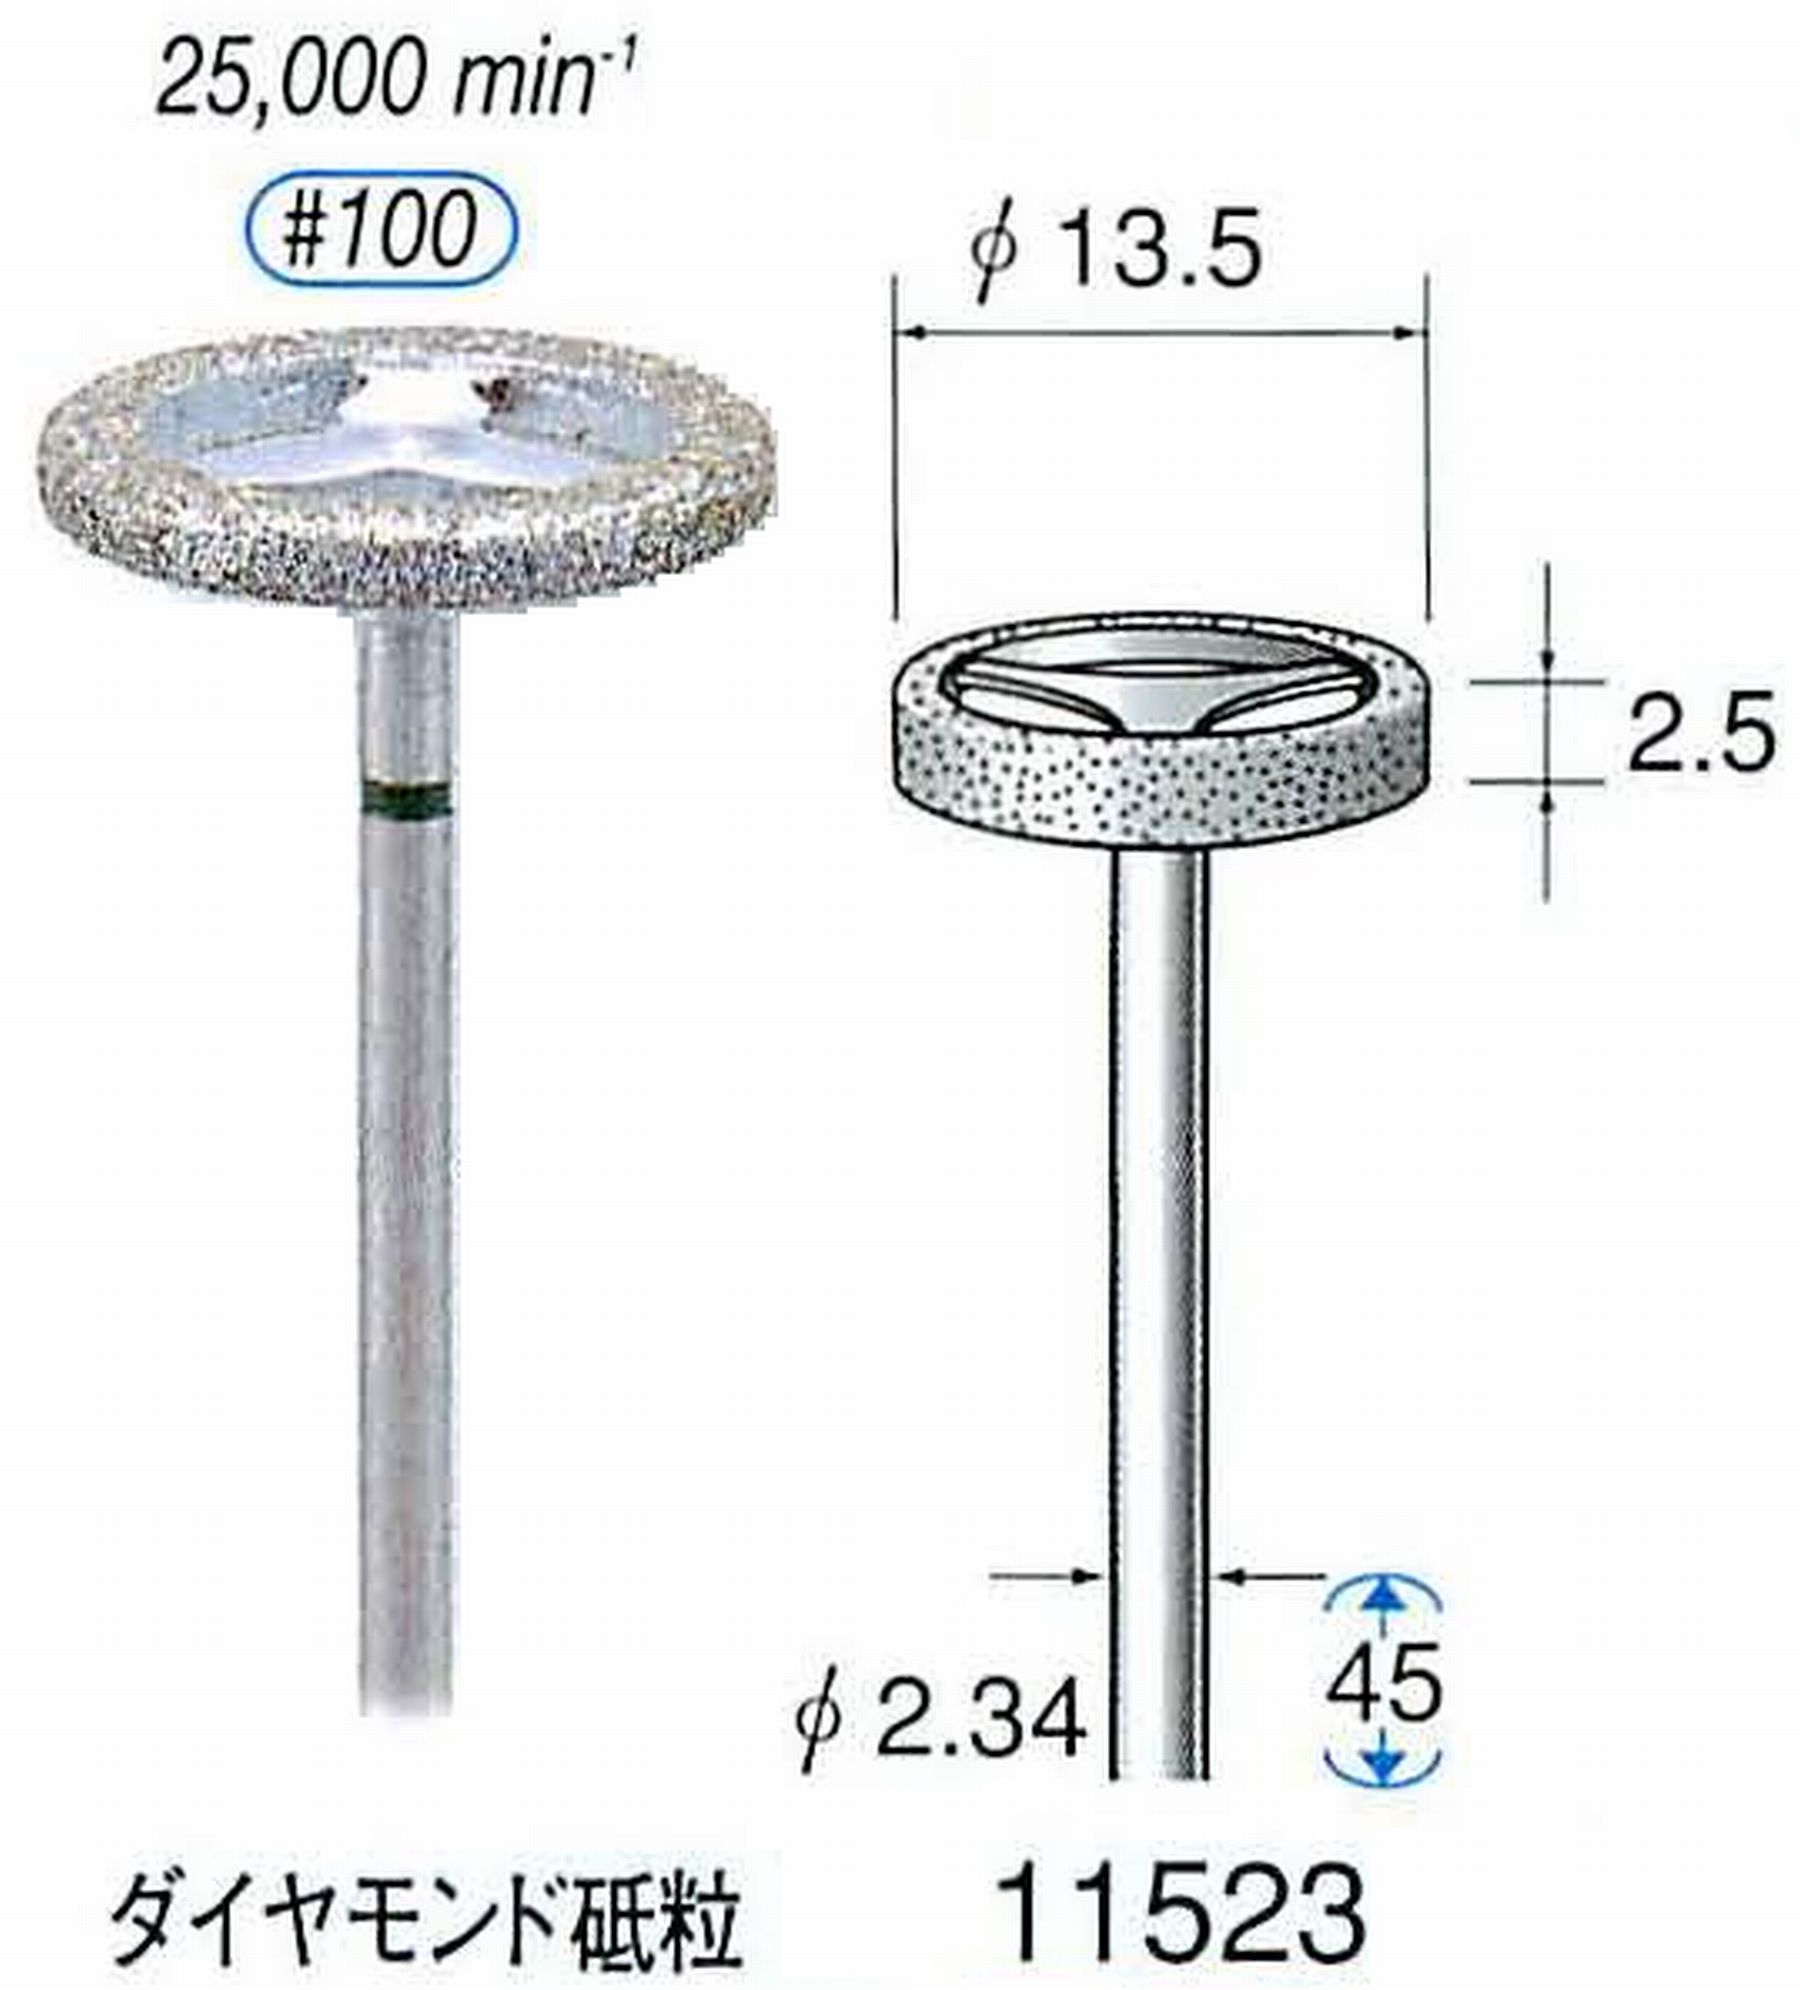 ナカニシ/NAKANISHI 電着ダイヤモンドバー ダイヤモンド砥粒 軸径(シャンク)φ2.34mm 11523